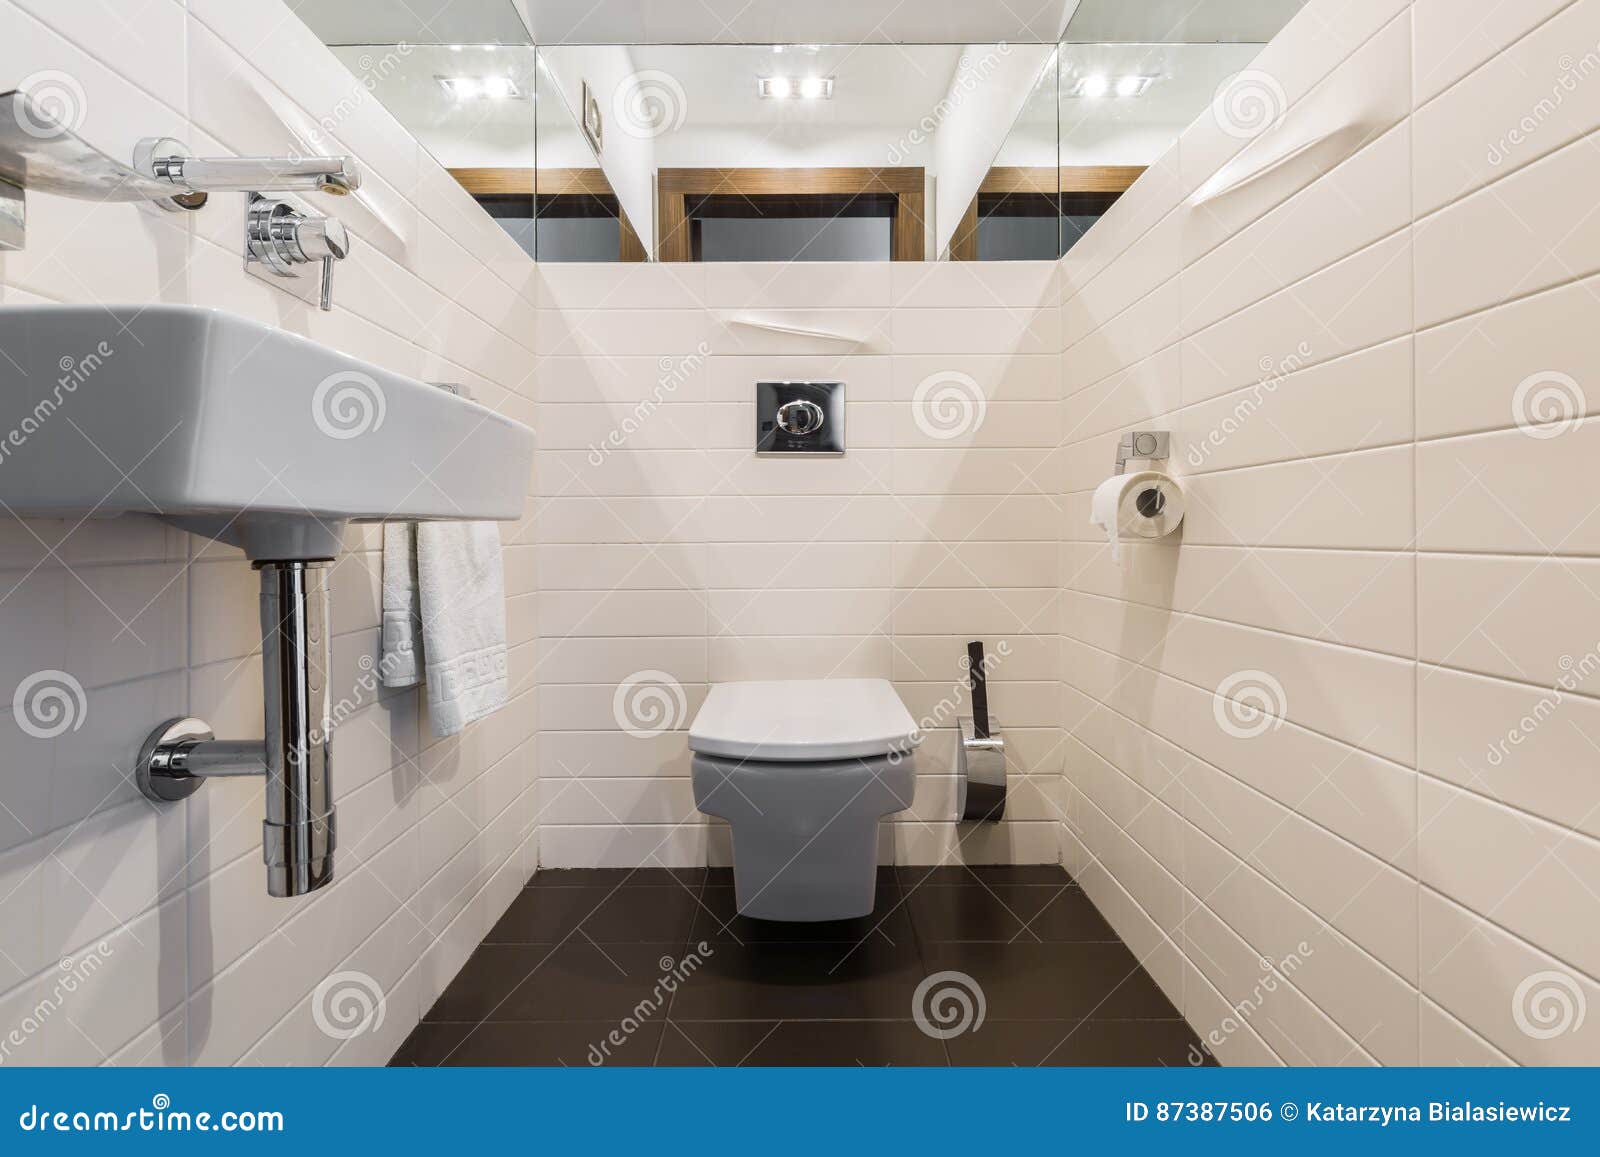 Minimalistische badkamers met toilet en gootsteen. Minimalistische moderne badkamers in wit met toiletzetel en gootsteen